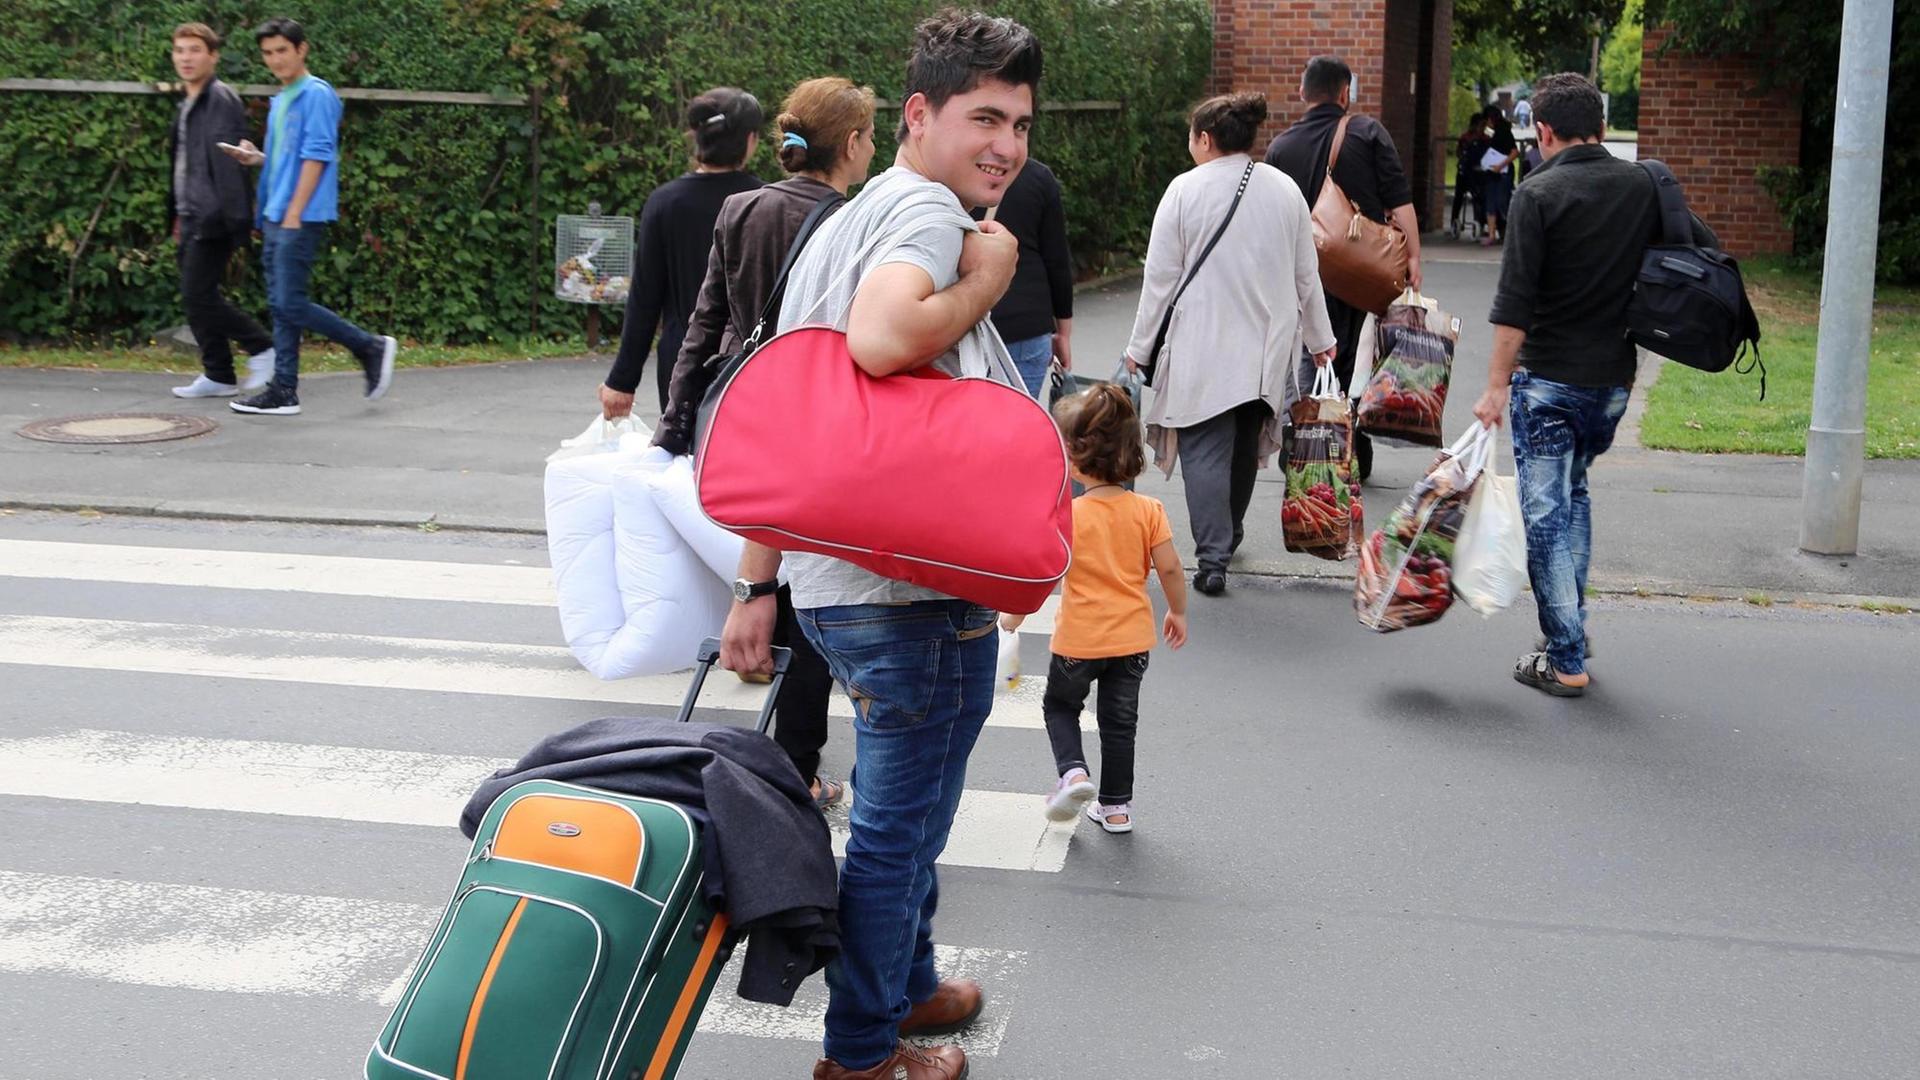 Eine irakische Familie kommt am 14.07.2015 im Grenzdurchgangslager Friedland (Niedersachsen) an.